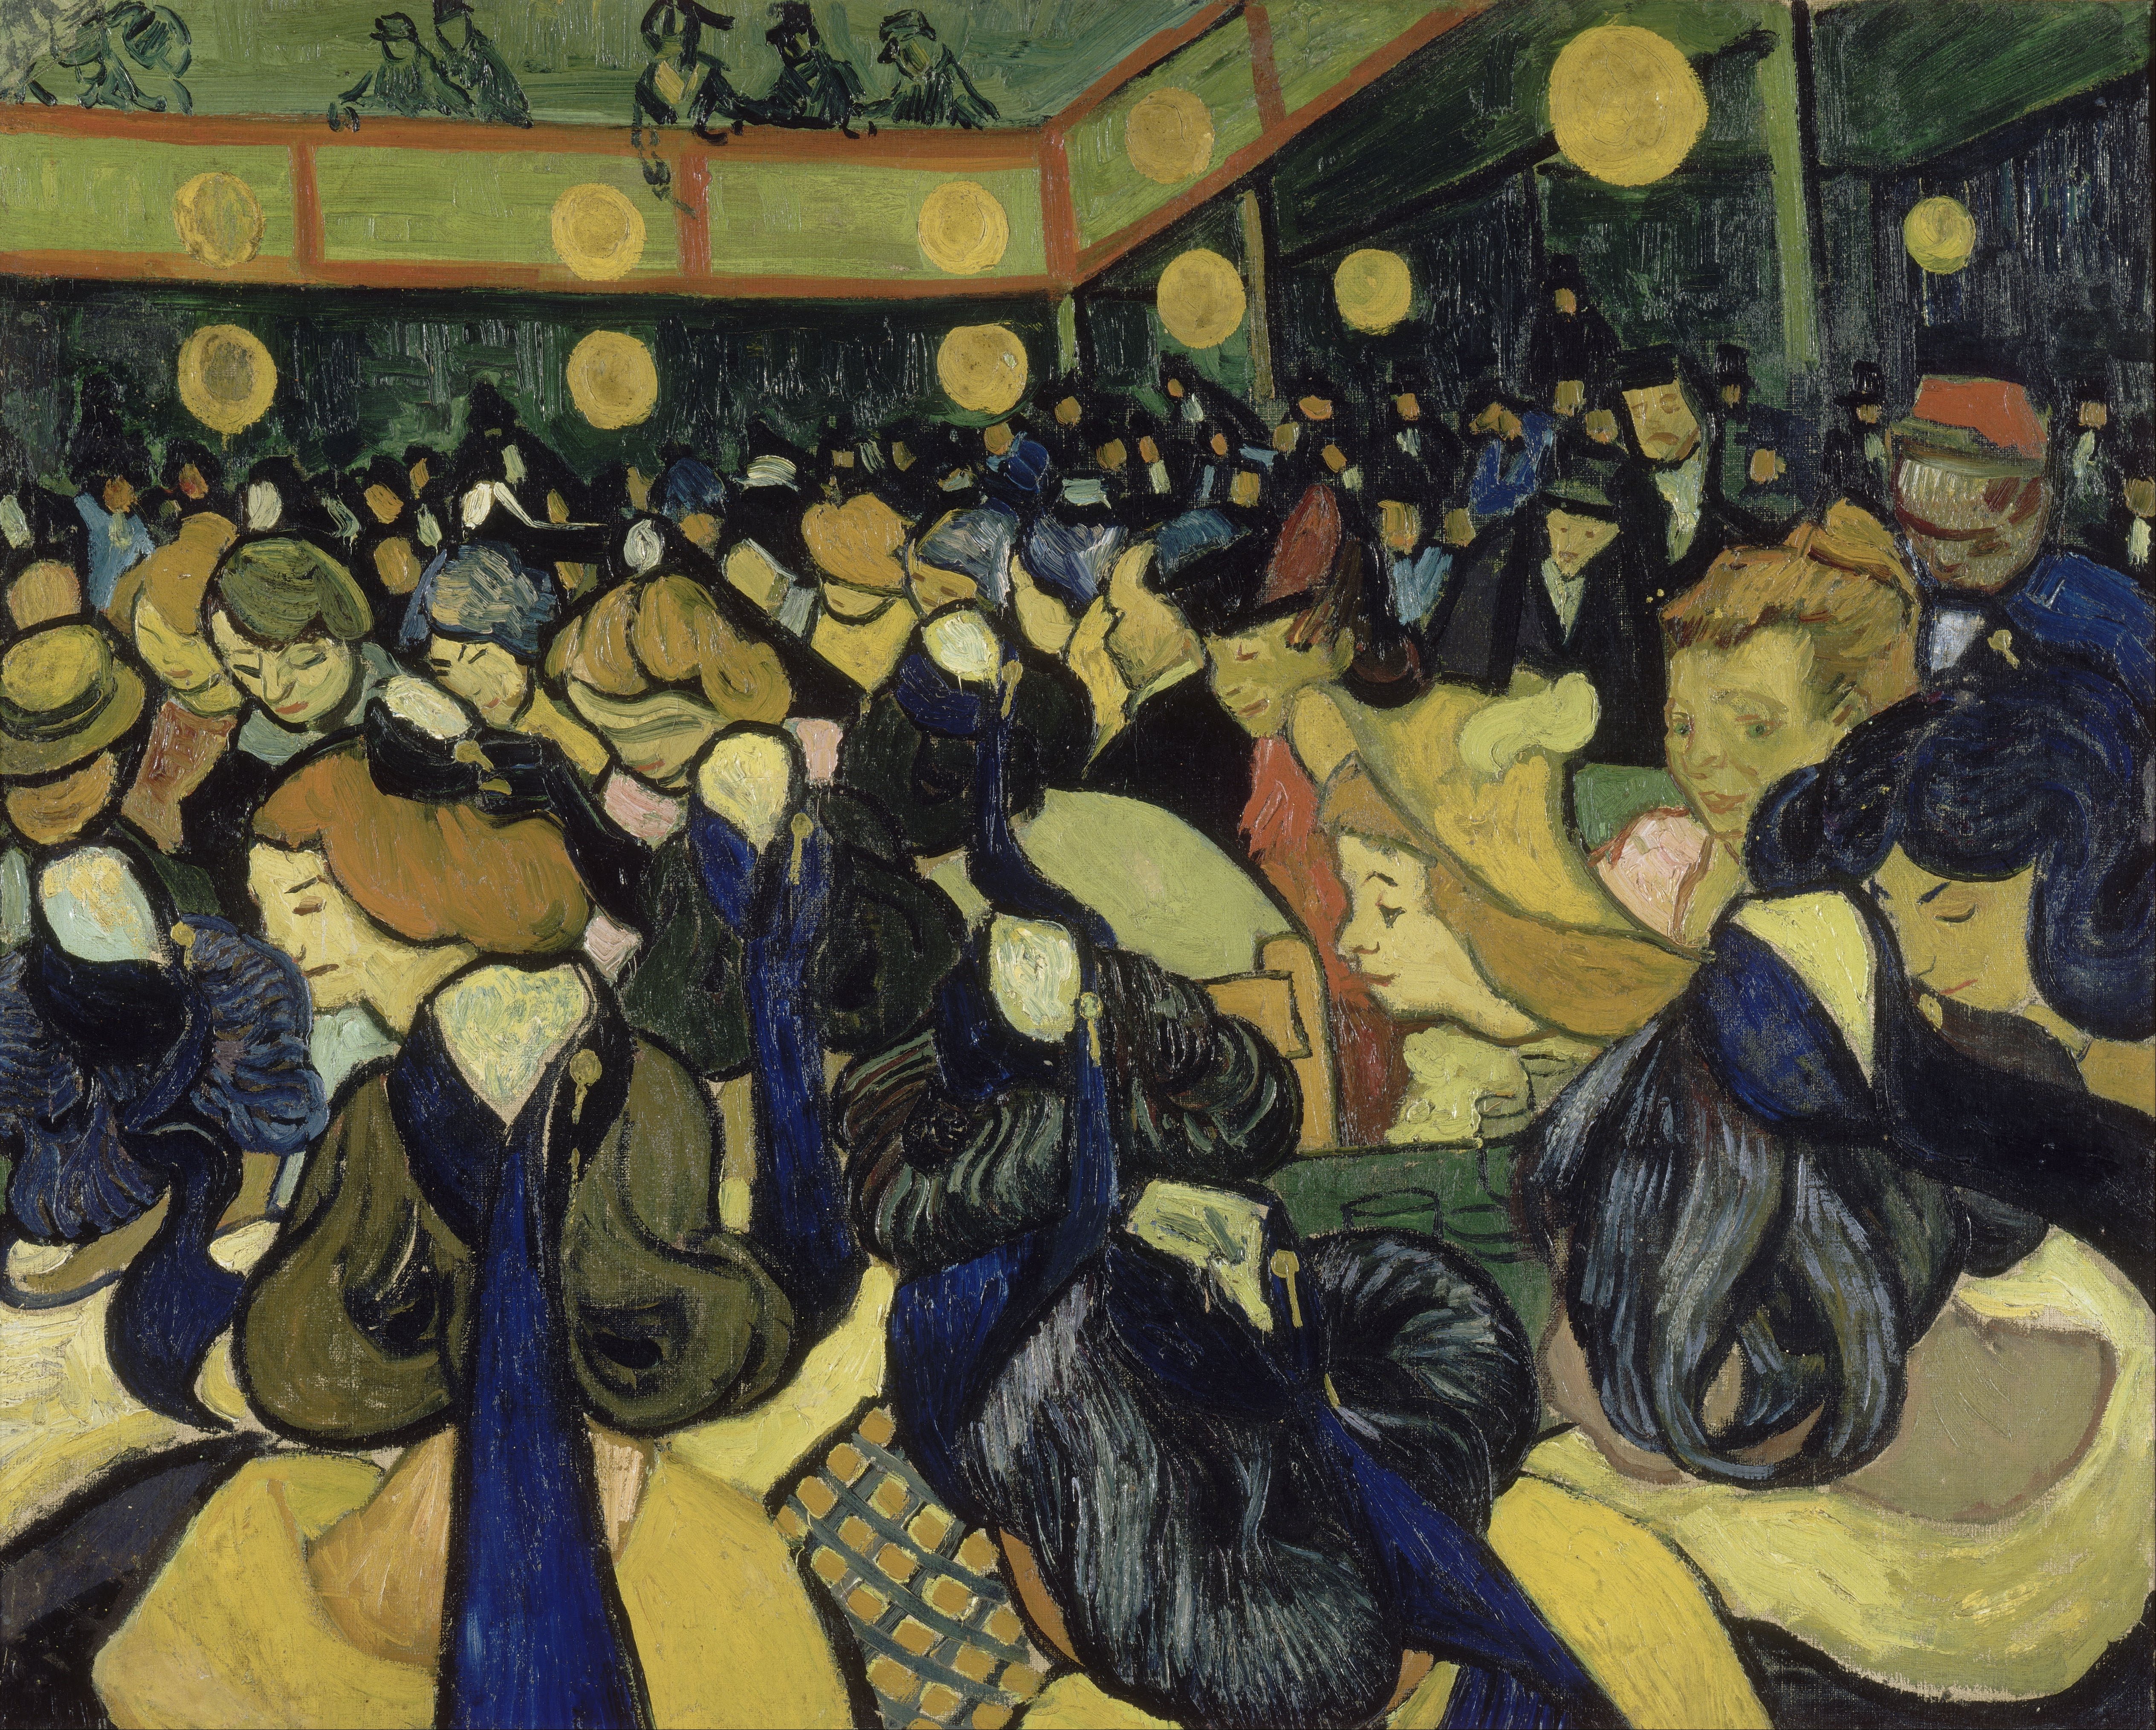 De Danszaal in Arles by Vincent Van Gogh - 1888 - 65 x 81 cm 